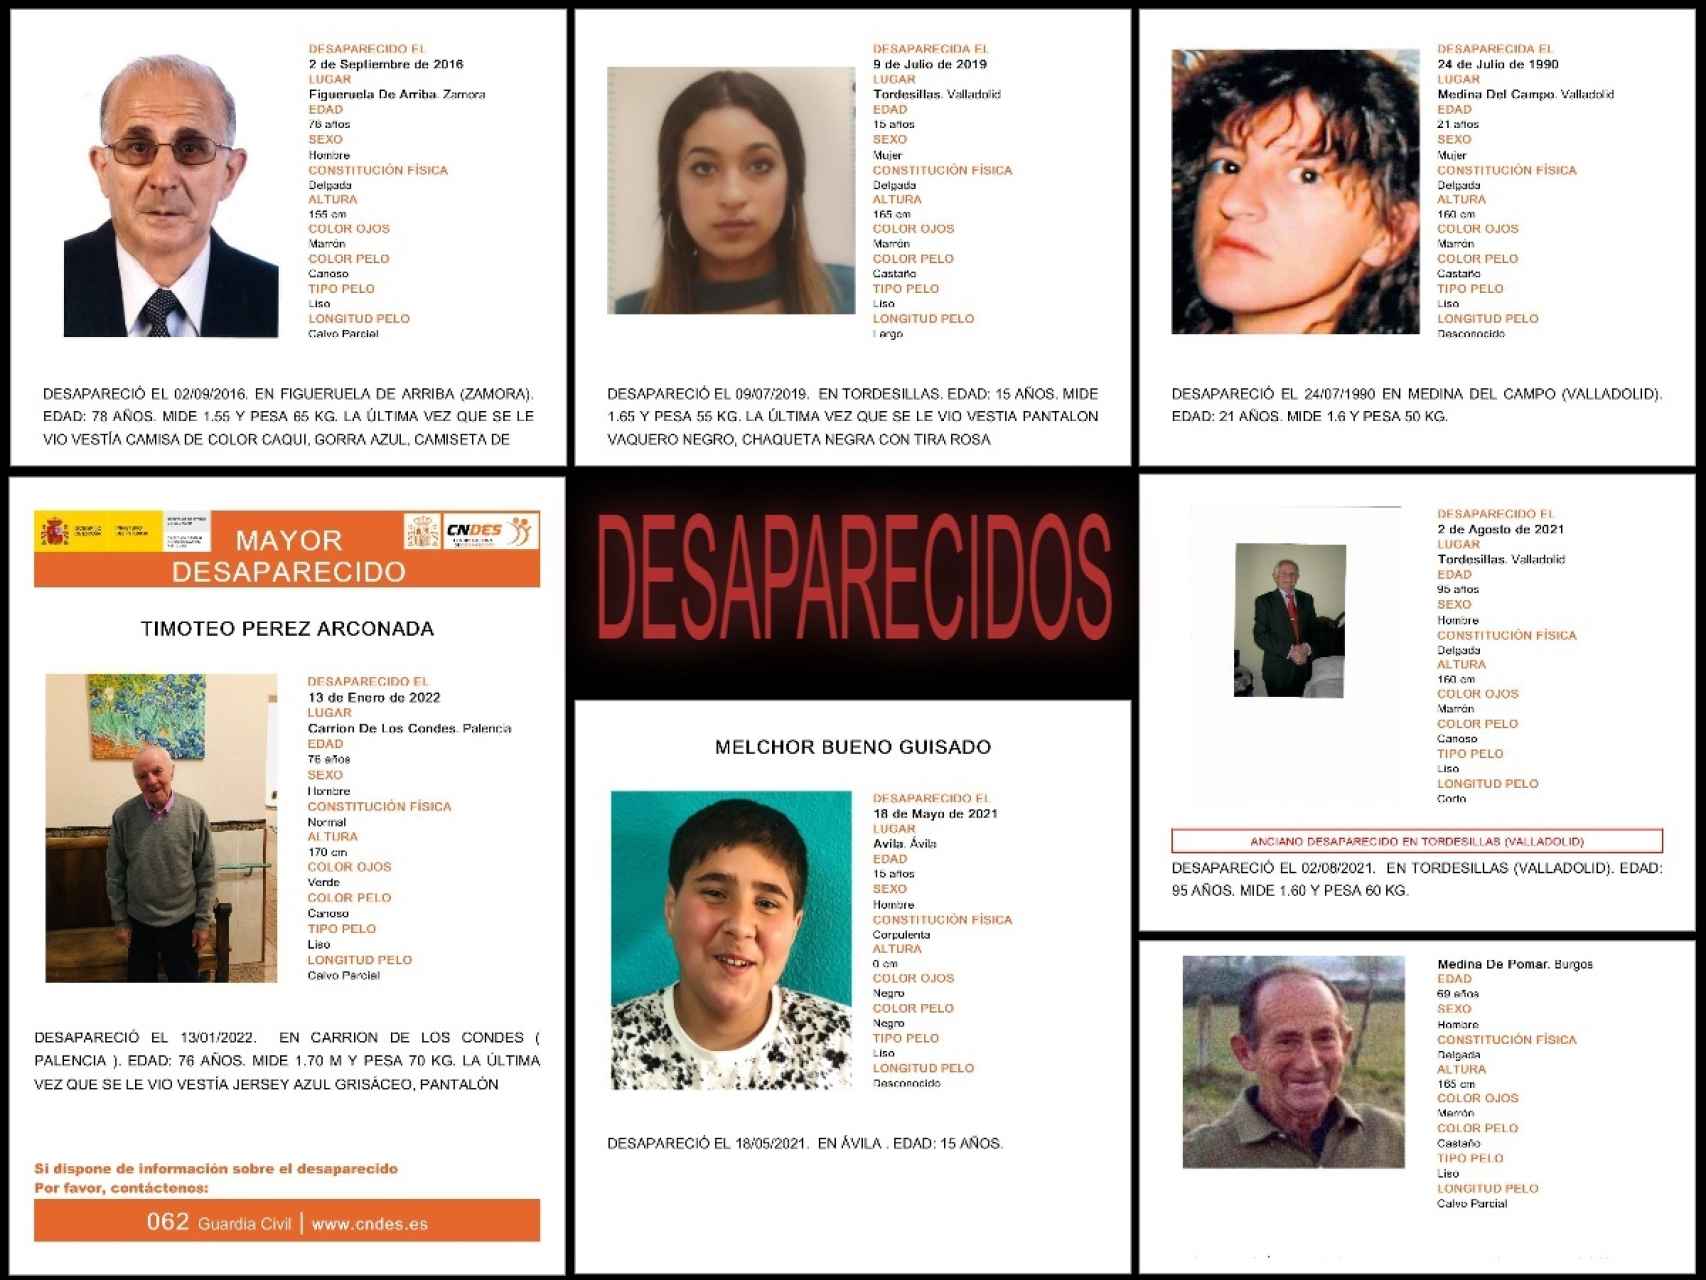 Desaparecidos en Castilla y León